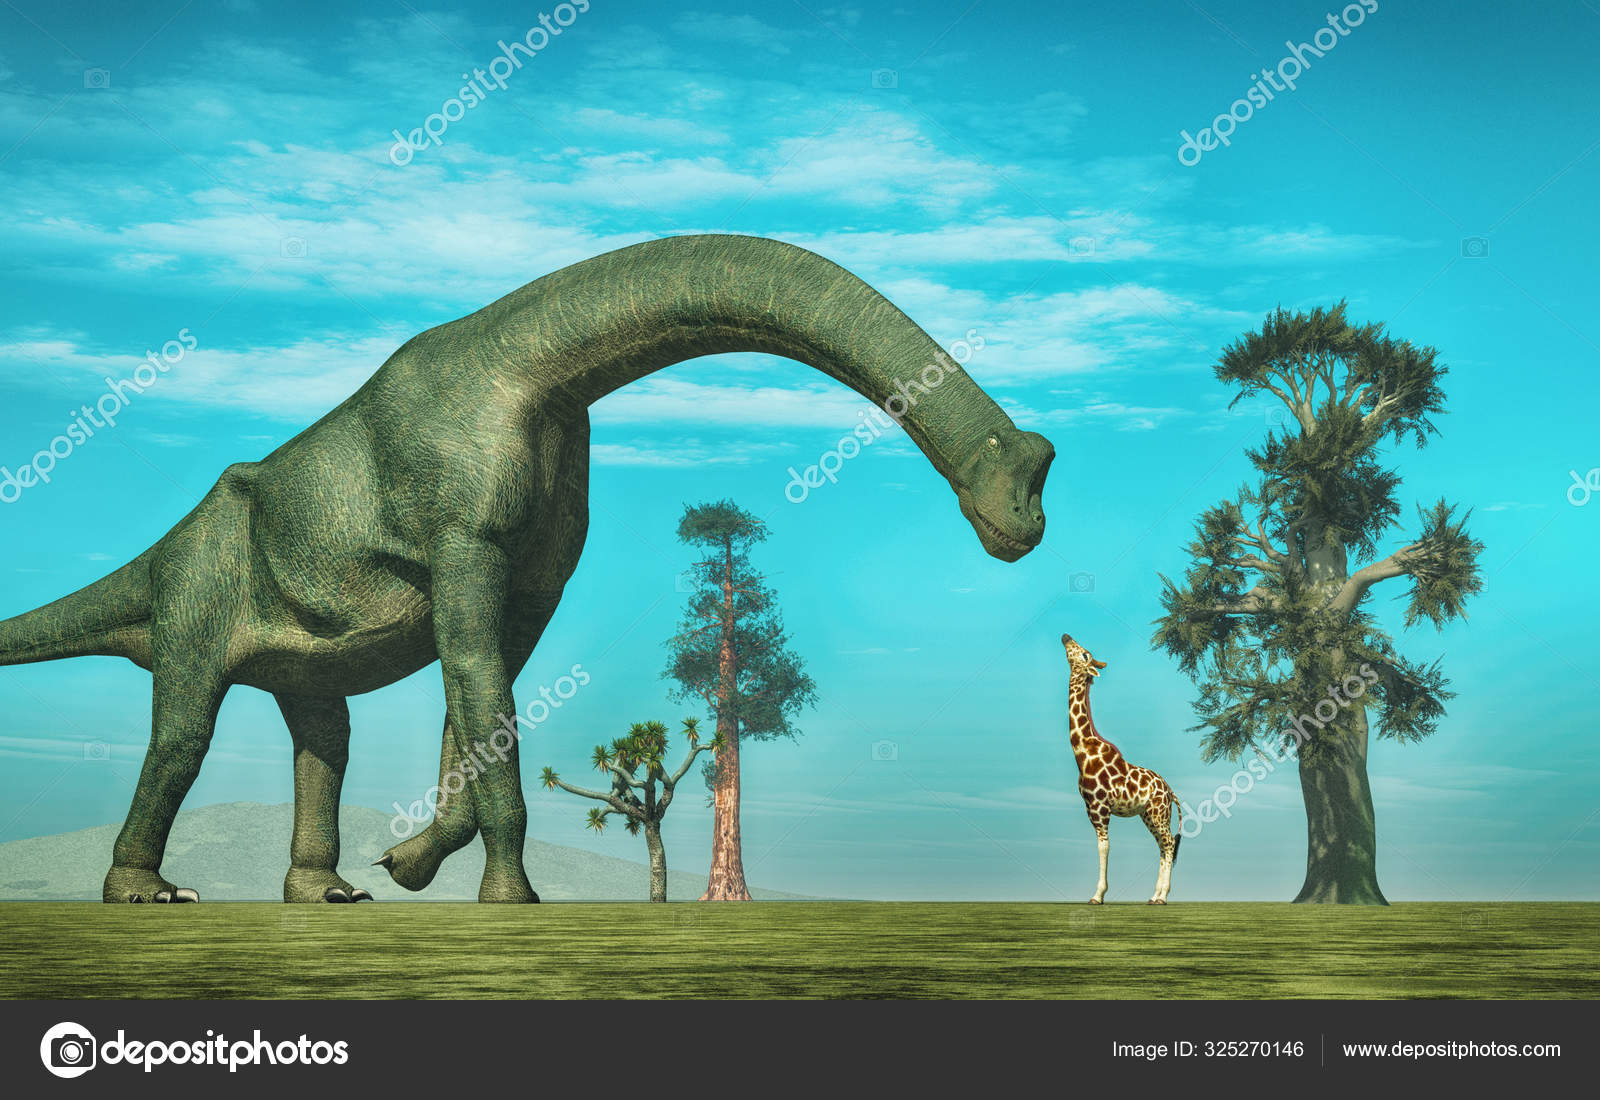 Giraffe vs brachiosaurus.